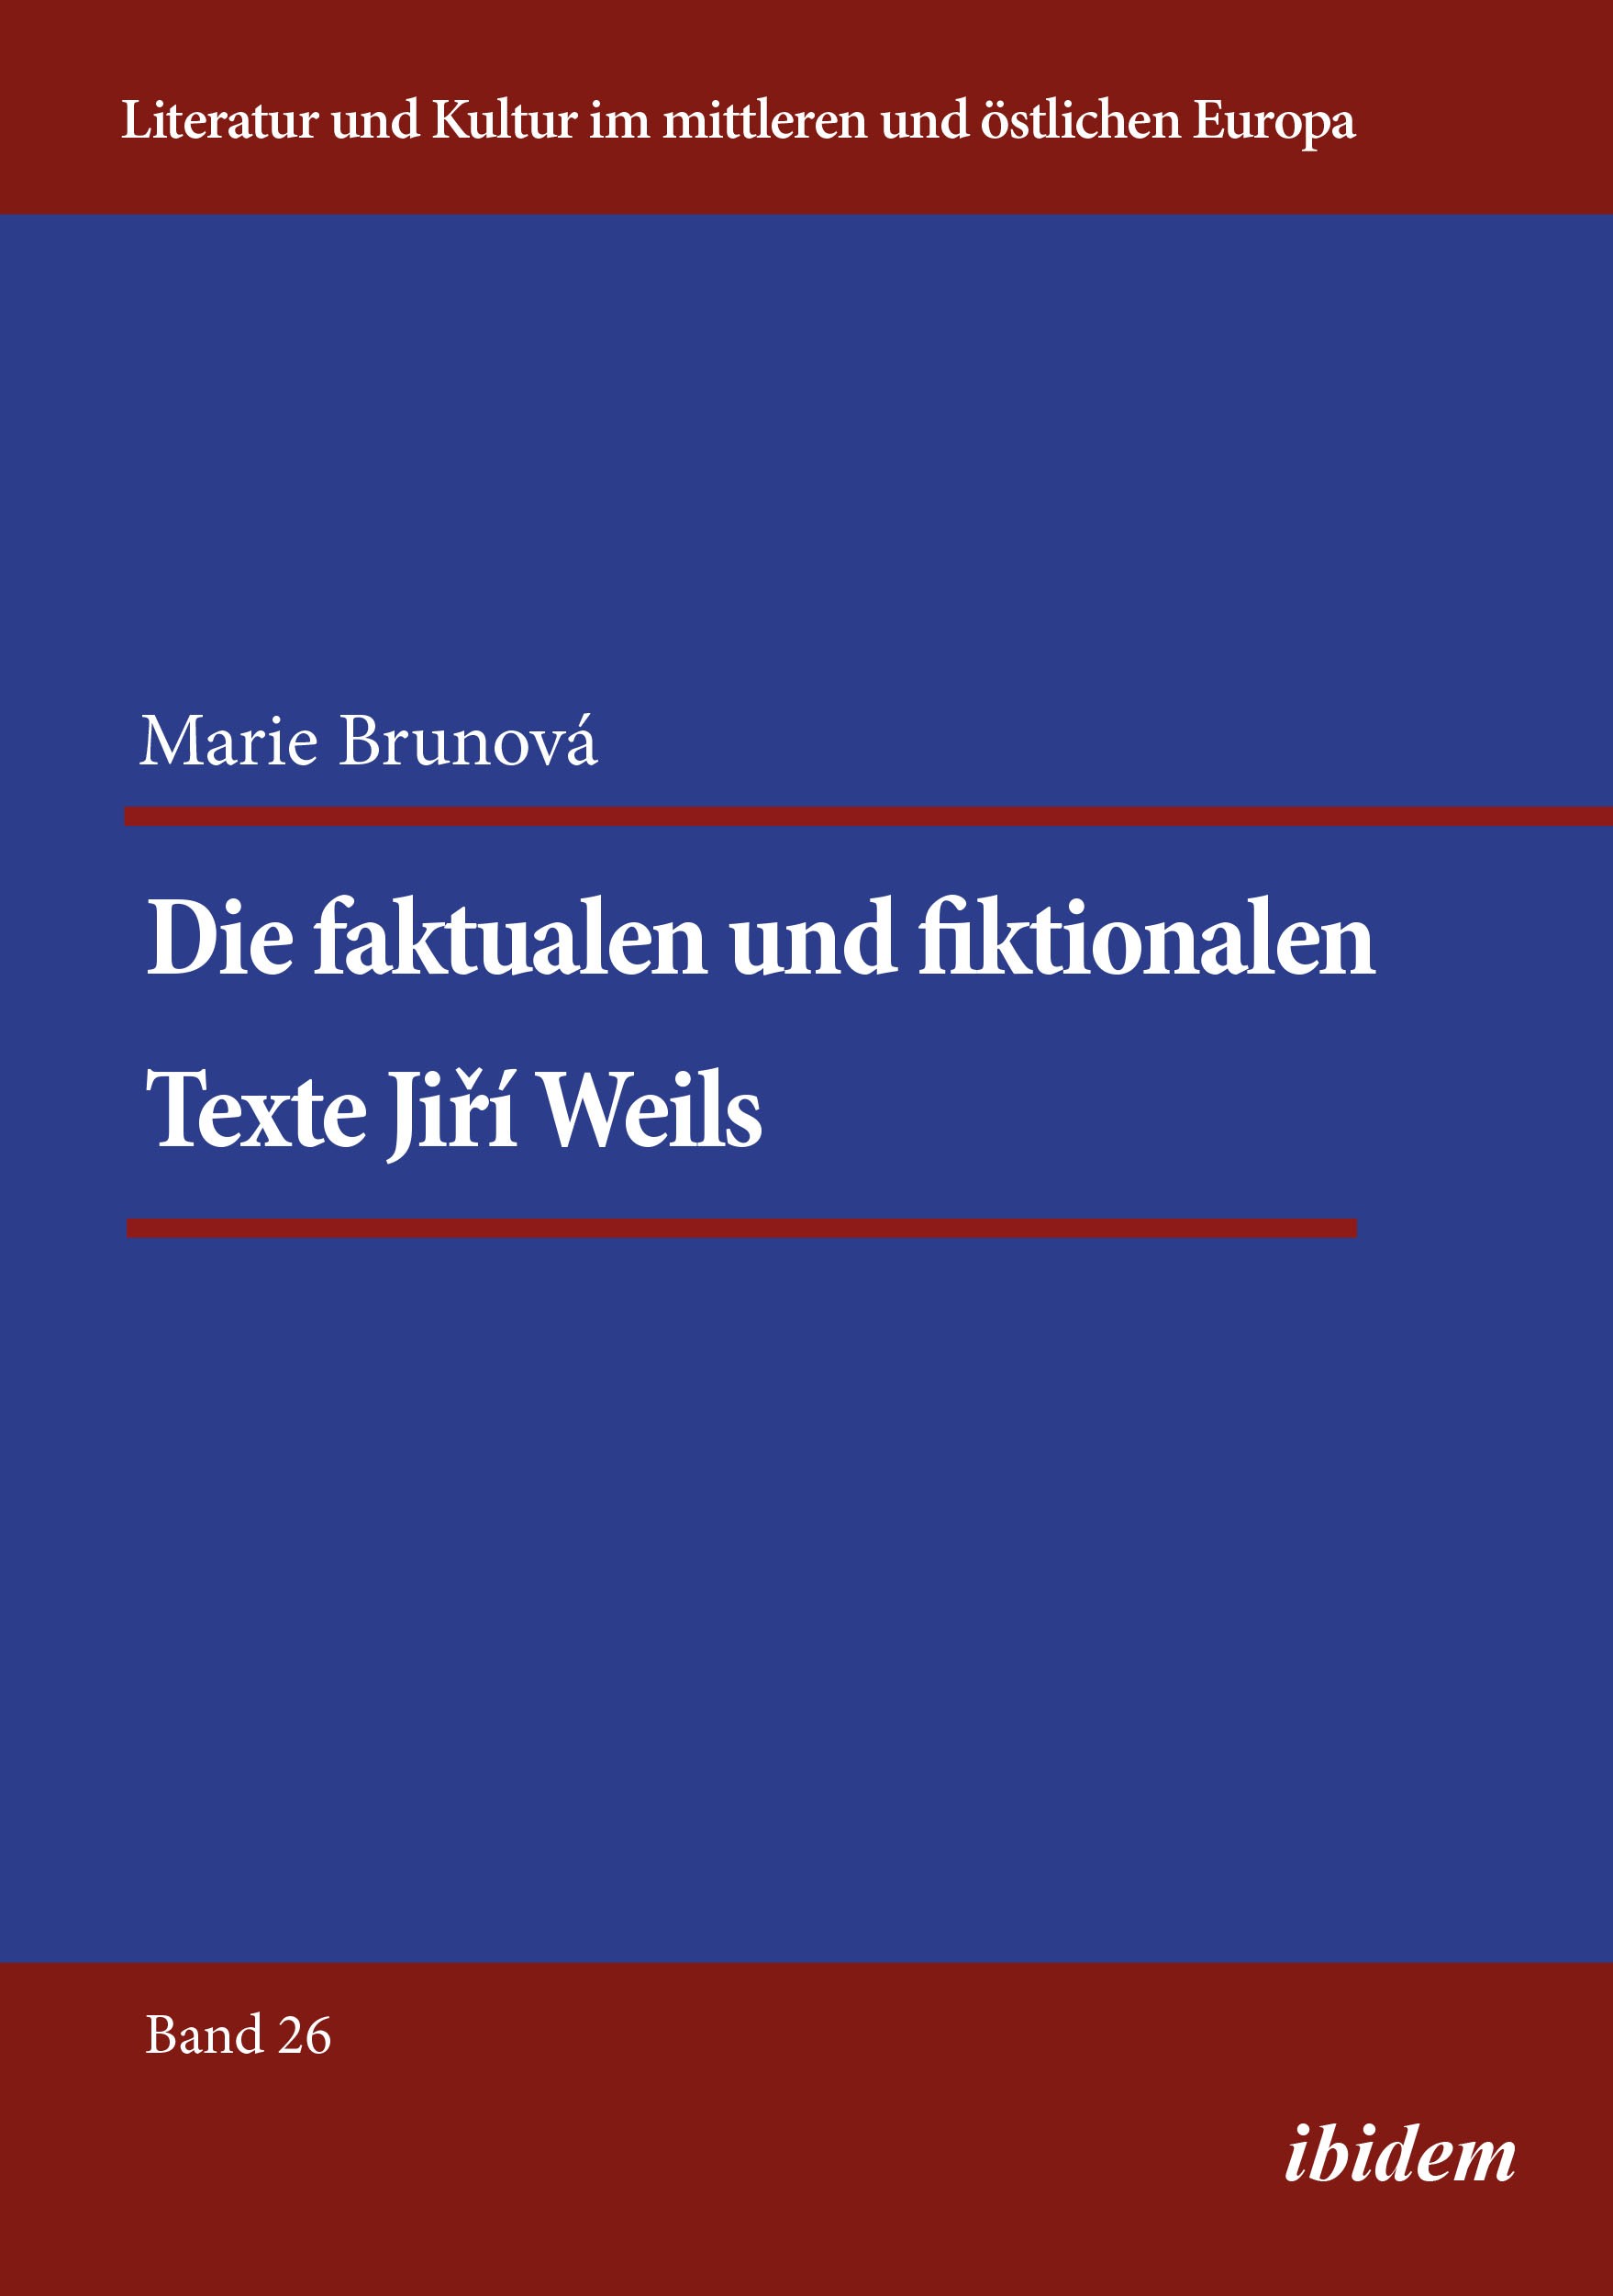 Die faktualen und fiktionalen Texte Jiří Weils